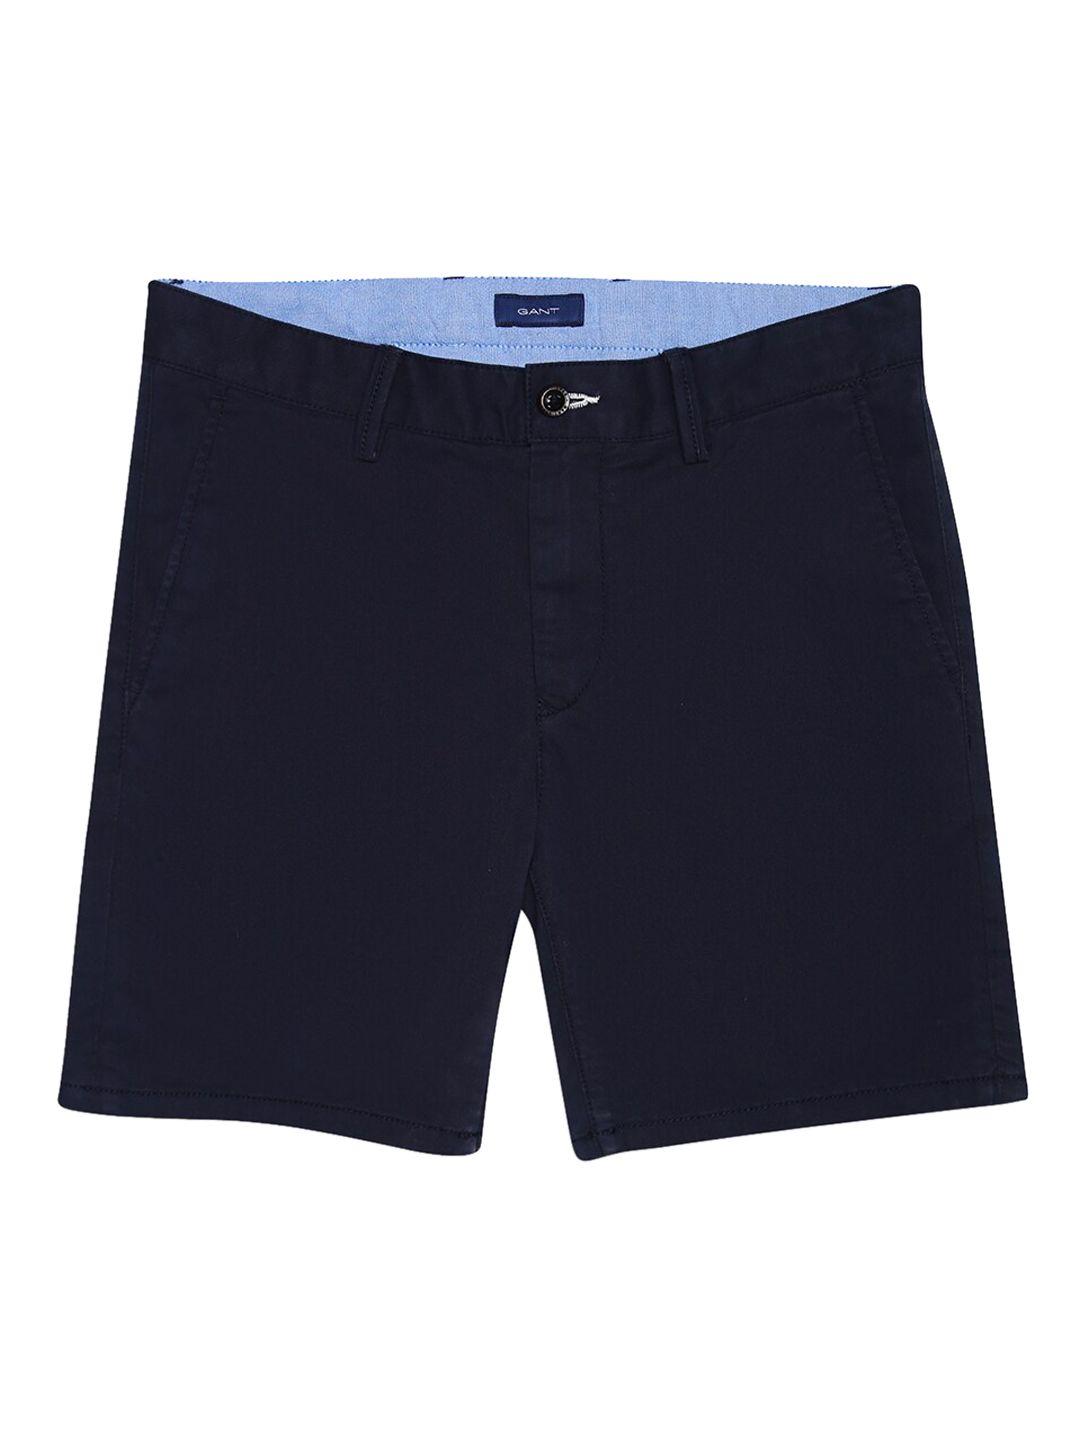 gant boys navy blue solid slim fit regular shorts